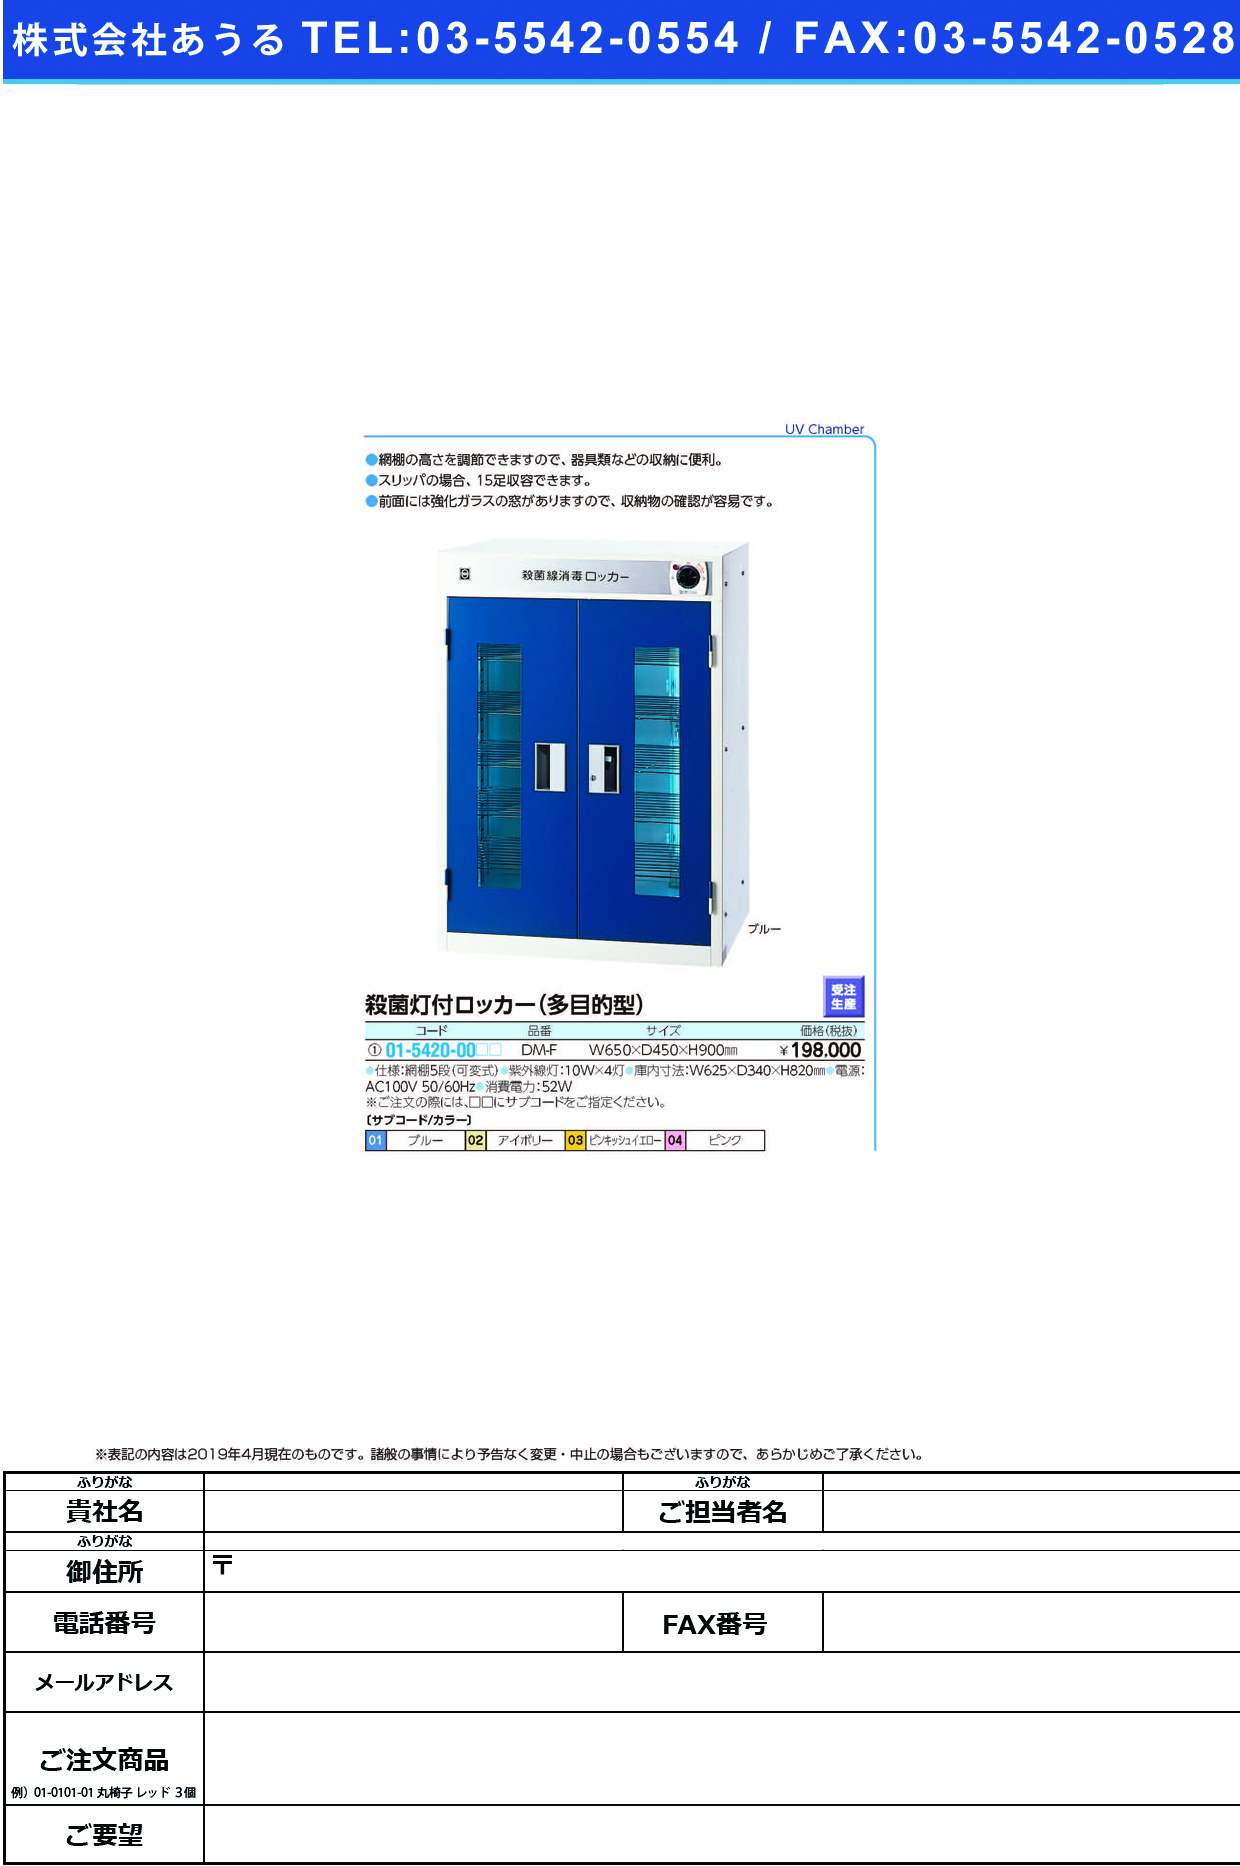 (01-5420-00)殺菌線ロッカー（多目的型） DM-F(W650XD450XH900) ｻｯｷﾝｾﾝﾛｯｶｰ ブルー【1台単位】【2019年カタログ商品】